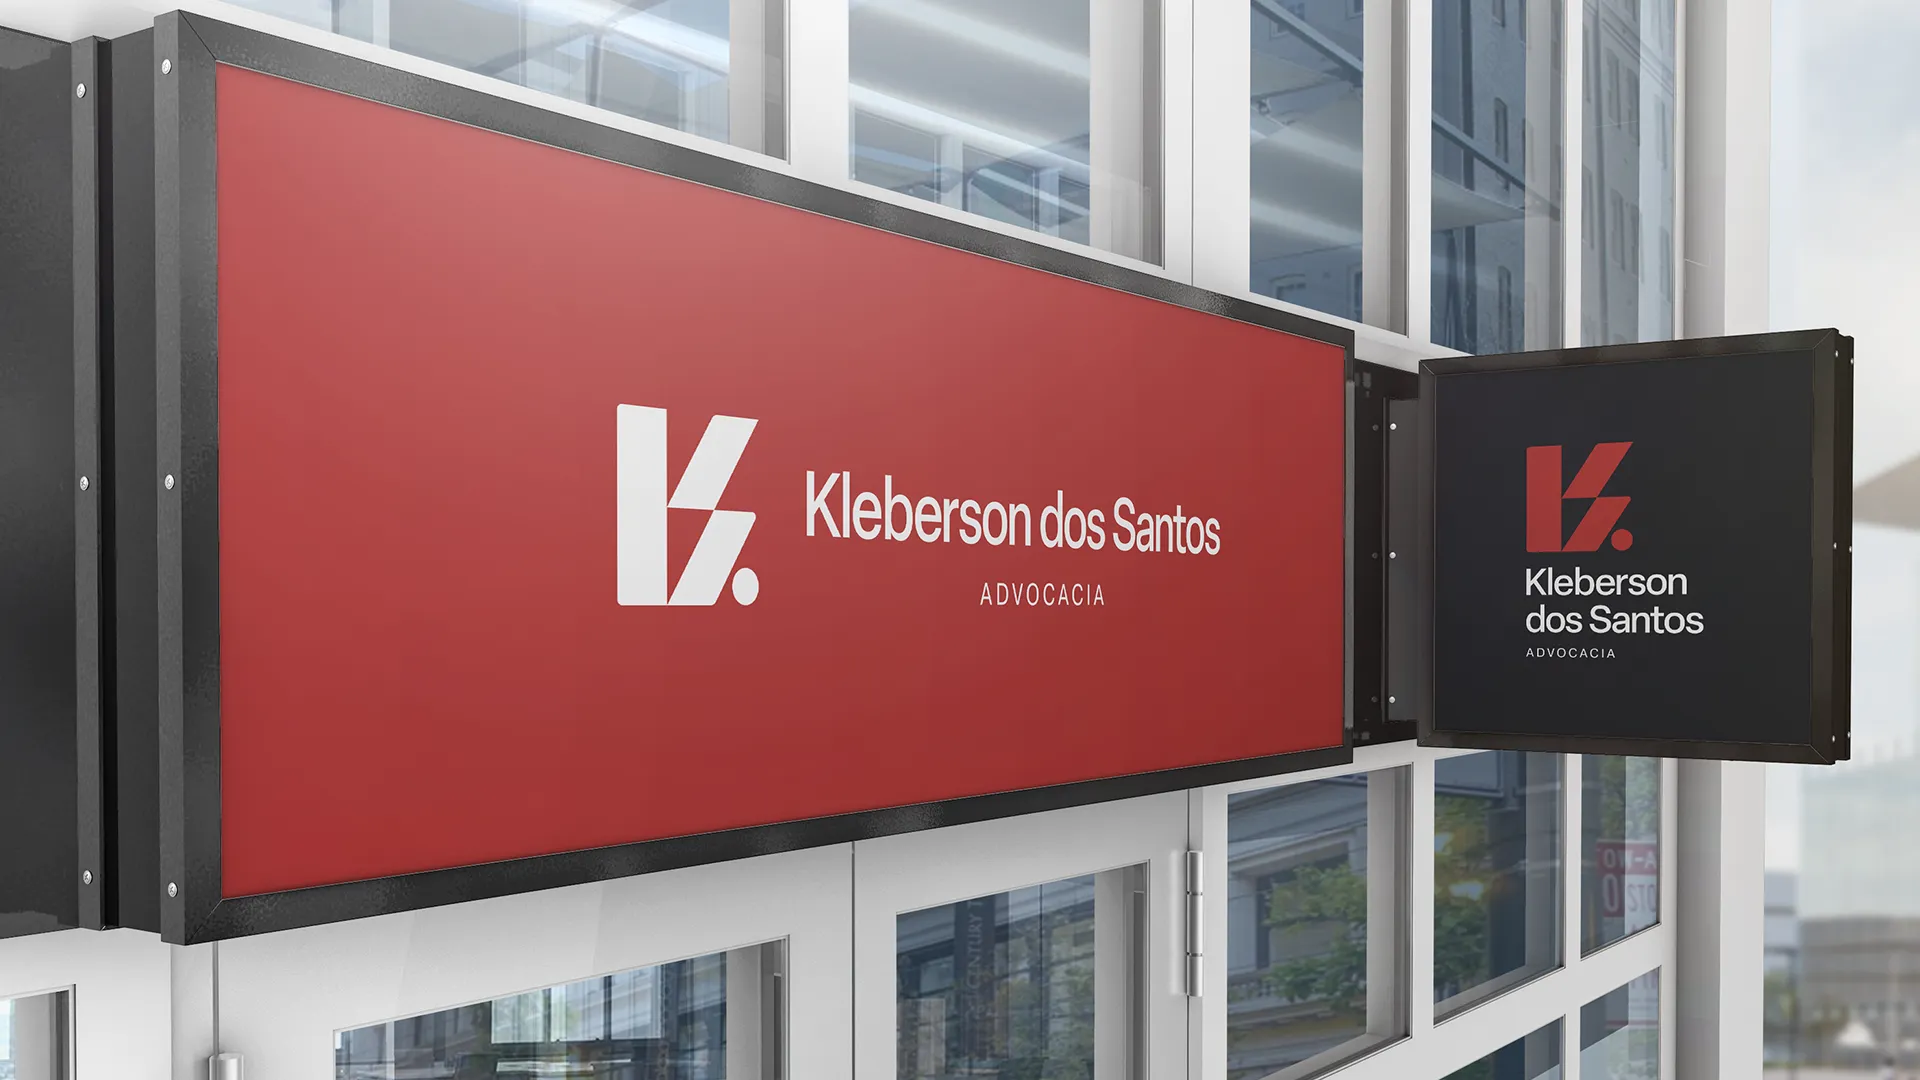 Fachada do escritório - Kleberson dos Santos